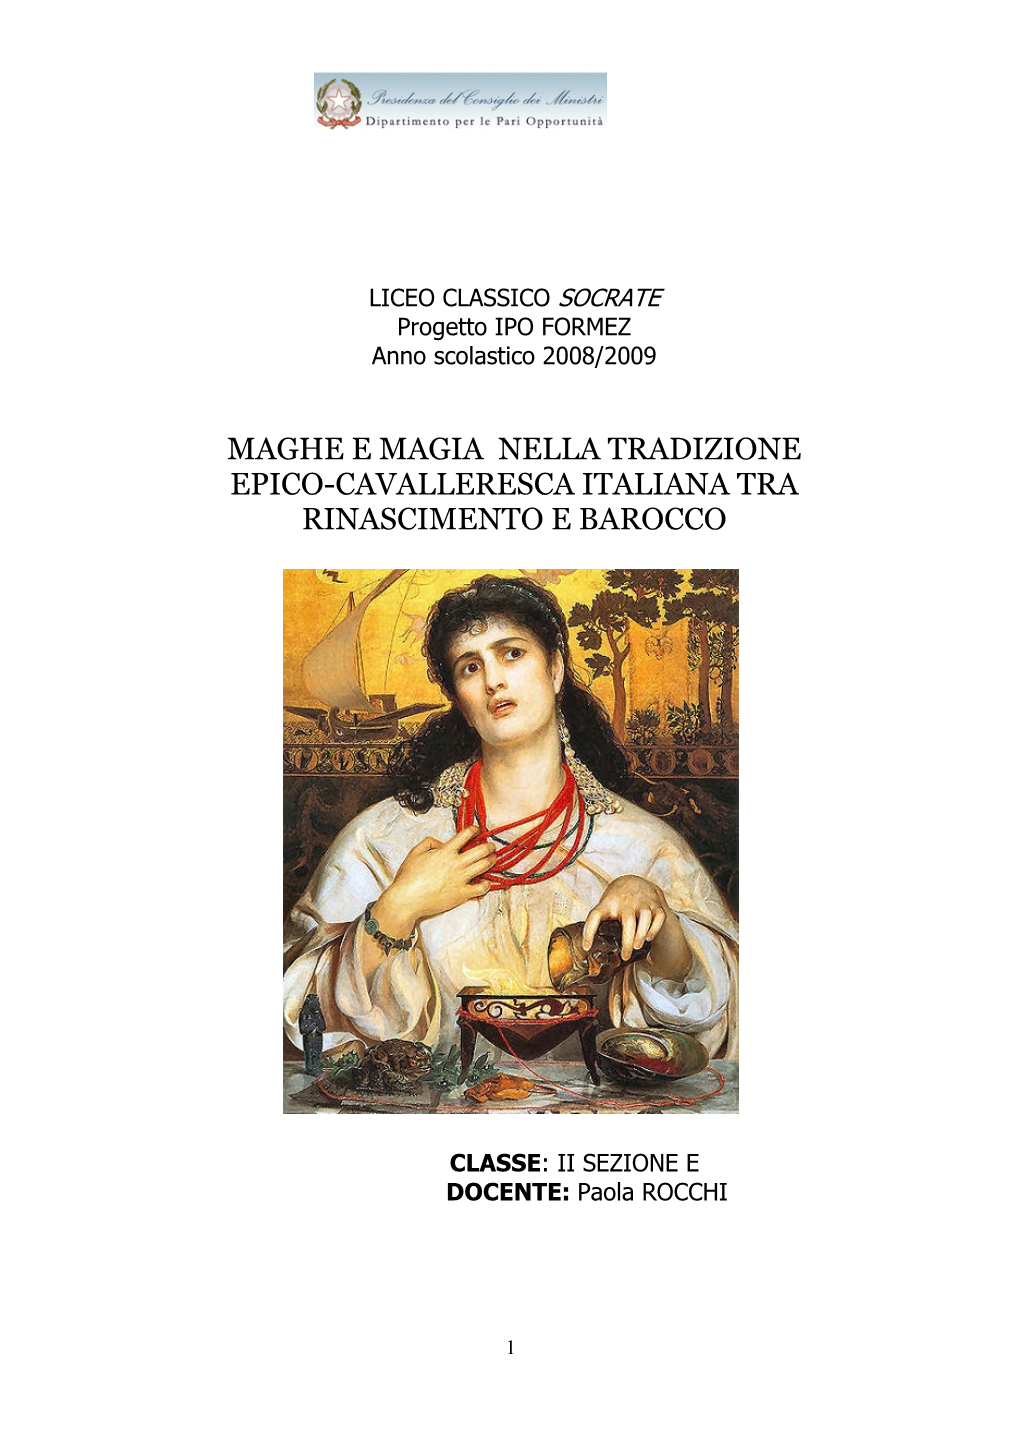 Maghe E Magia Nella Tradizione Epico-Cavalleresca Italiana Tra Rinascimento E Barocco